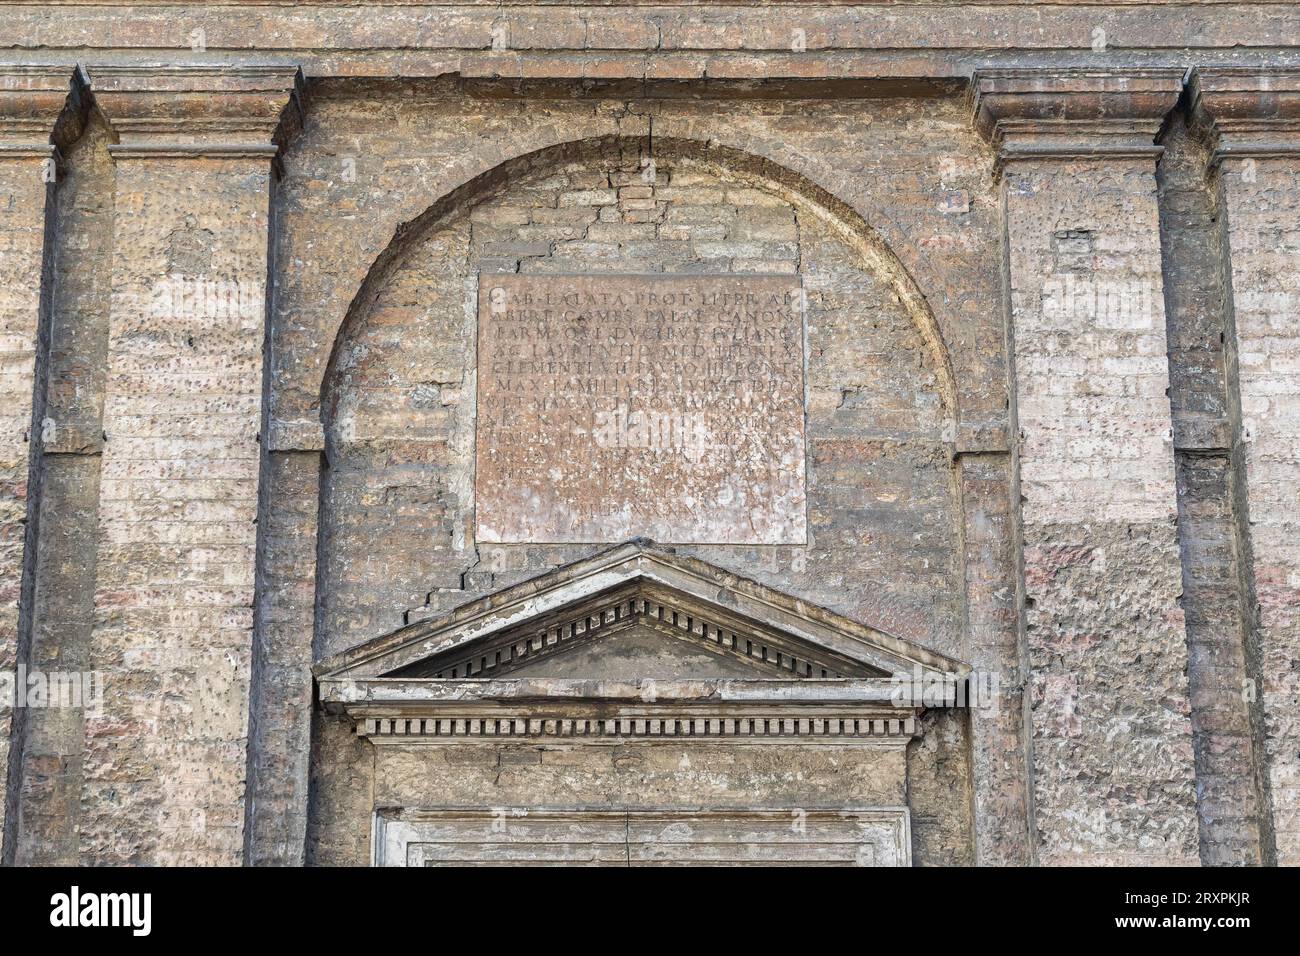 Particolare della facciata della chiesa sconsacrata di San Marcellino (XVI secolo) con frontone triangolare e iscrizione latina, Parma, Italia Foto Stock